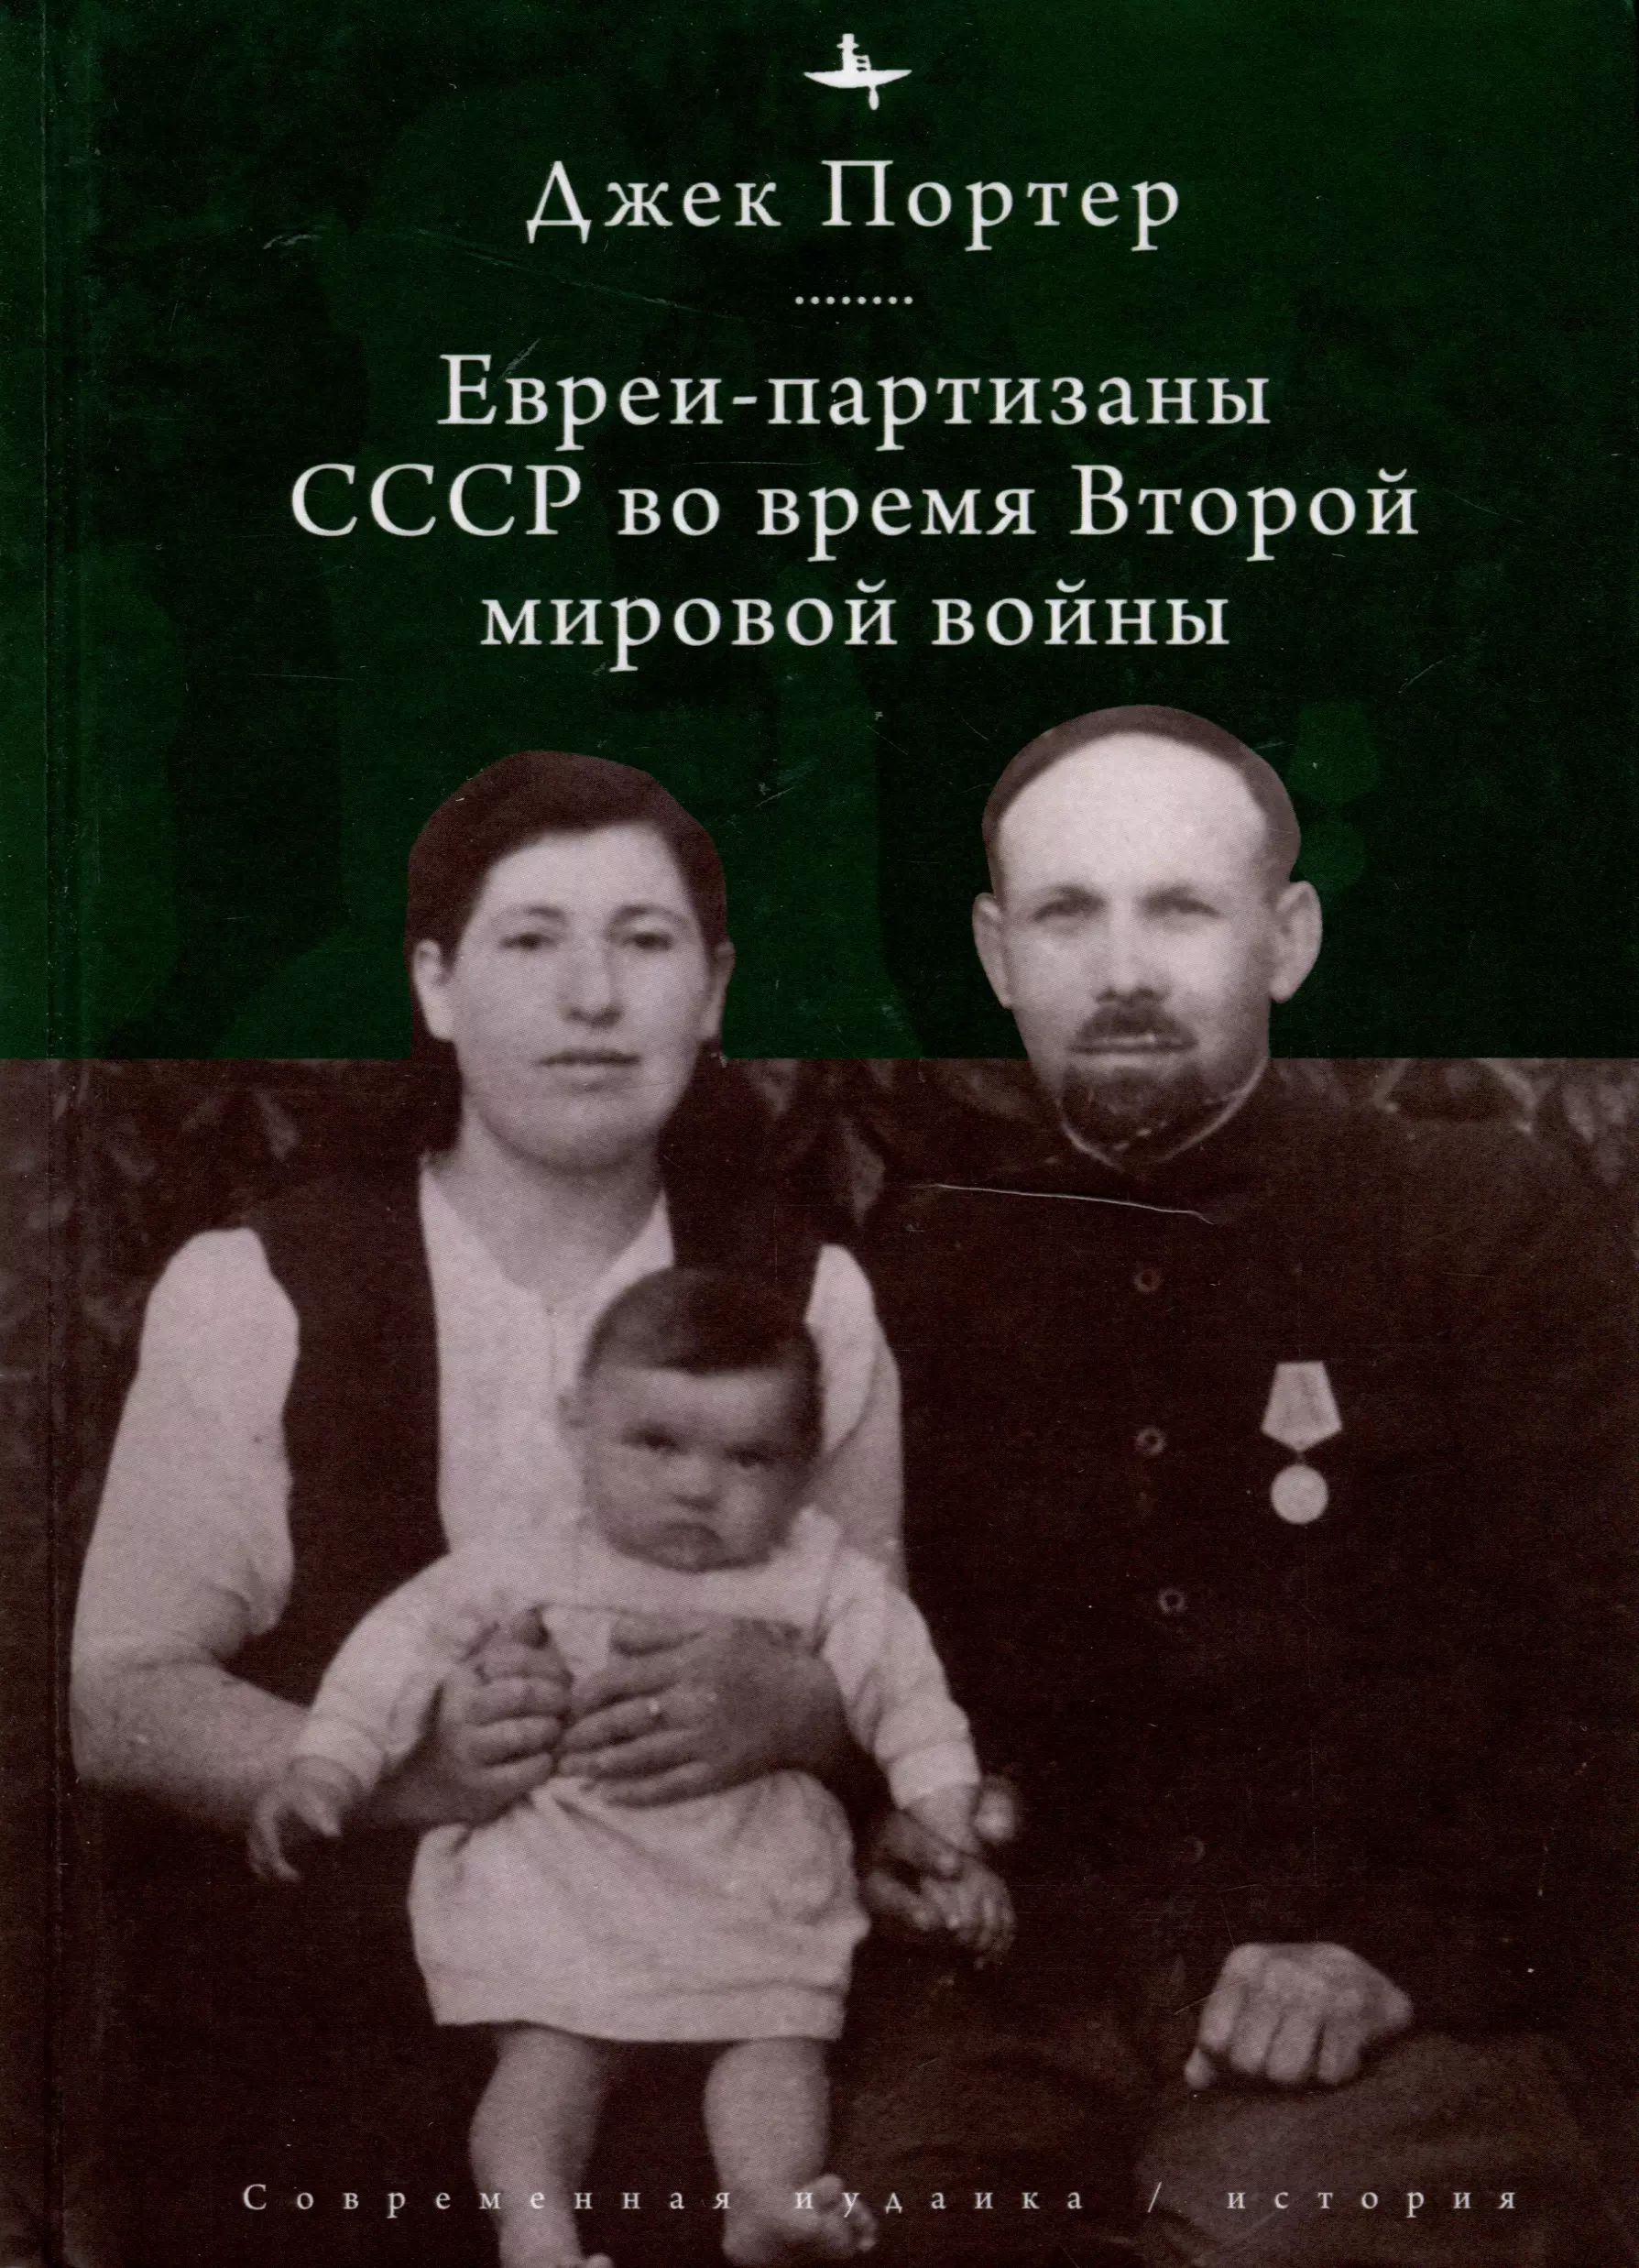 Портер Джек Евреи-партизаны СССР во время Второй мировой войны